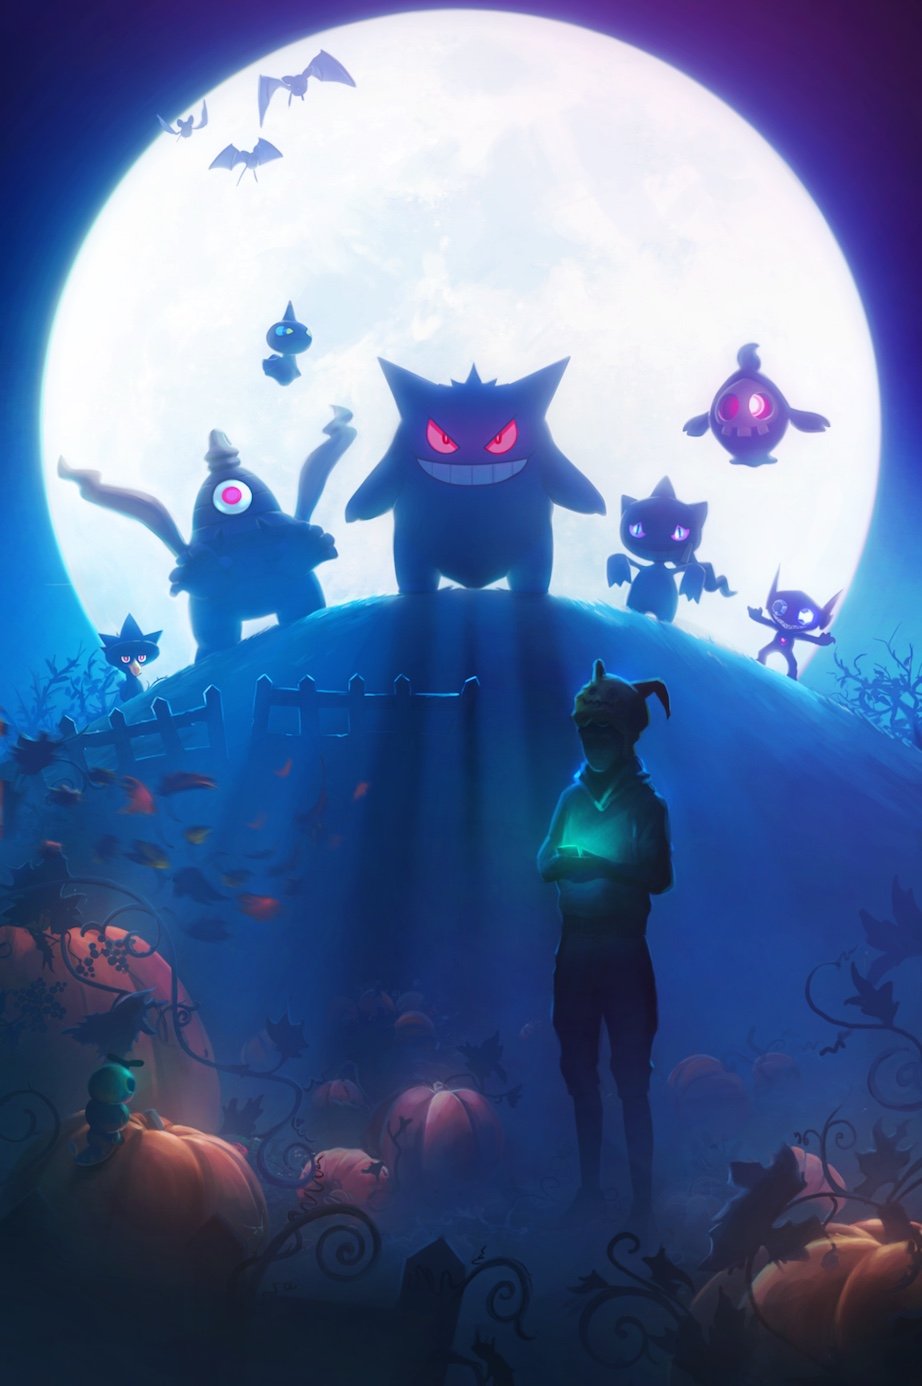 Imagem vazada de Pokémon GO